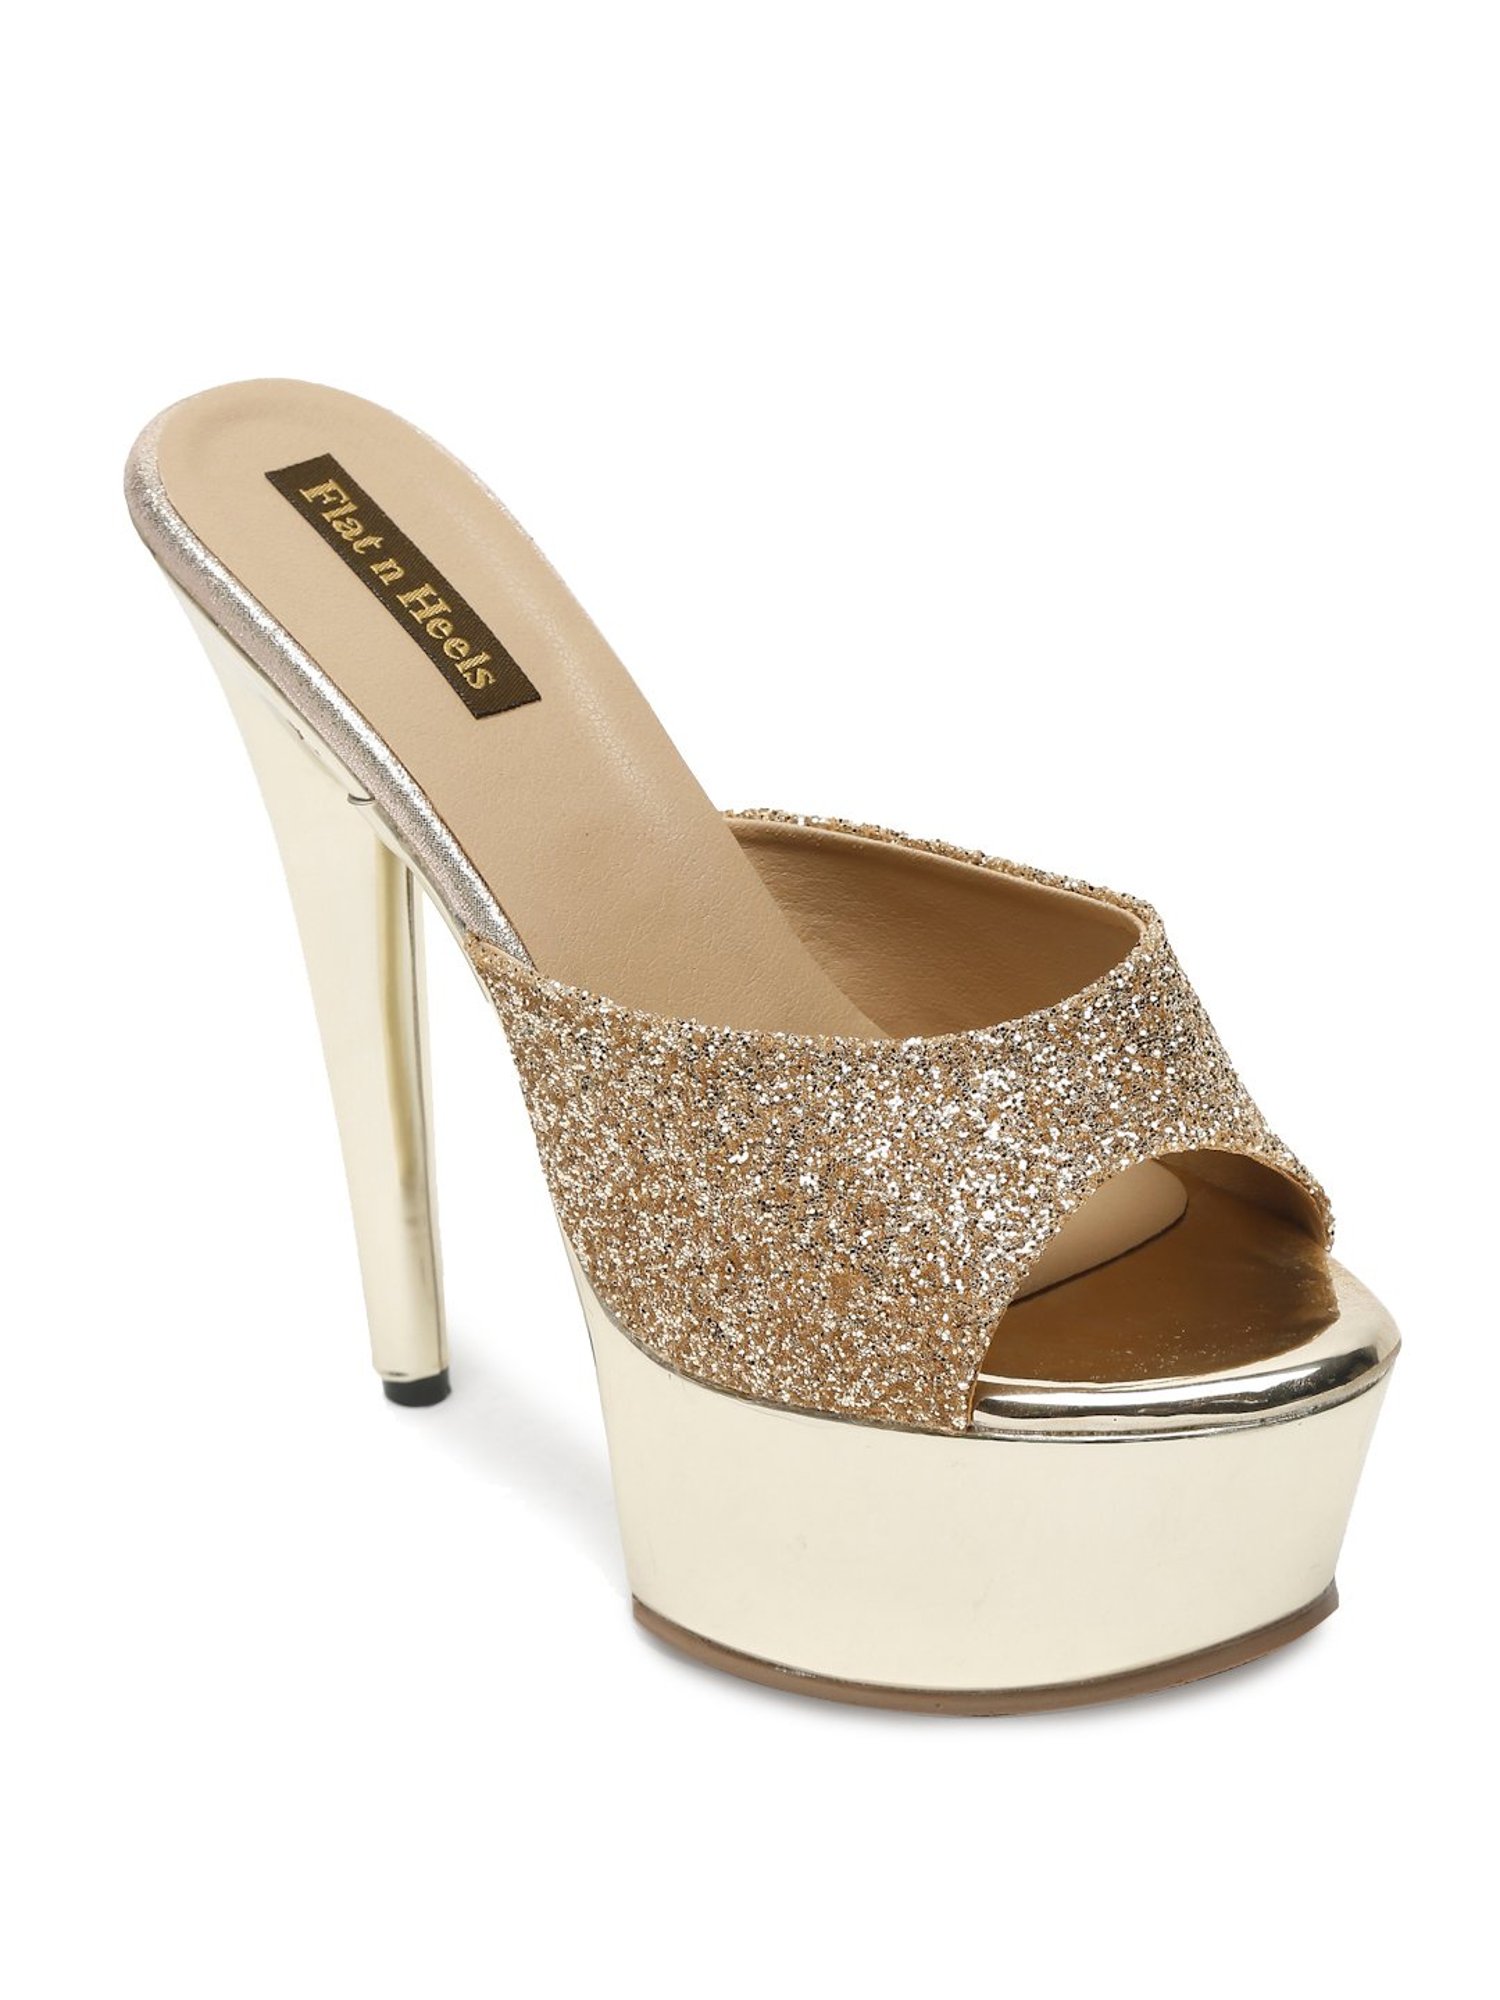 Ali Gold Heel | Shoes heels prom, Heels, Gold heels